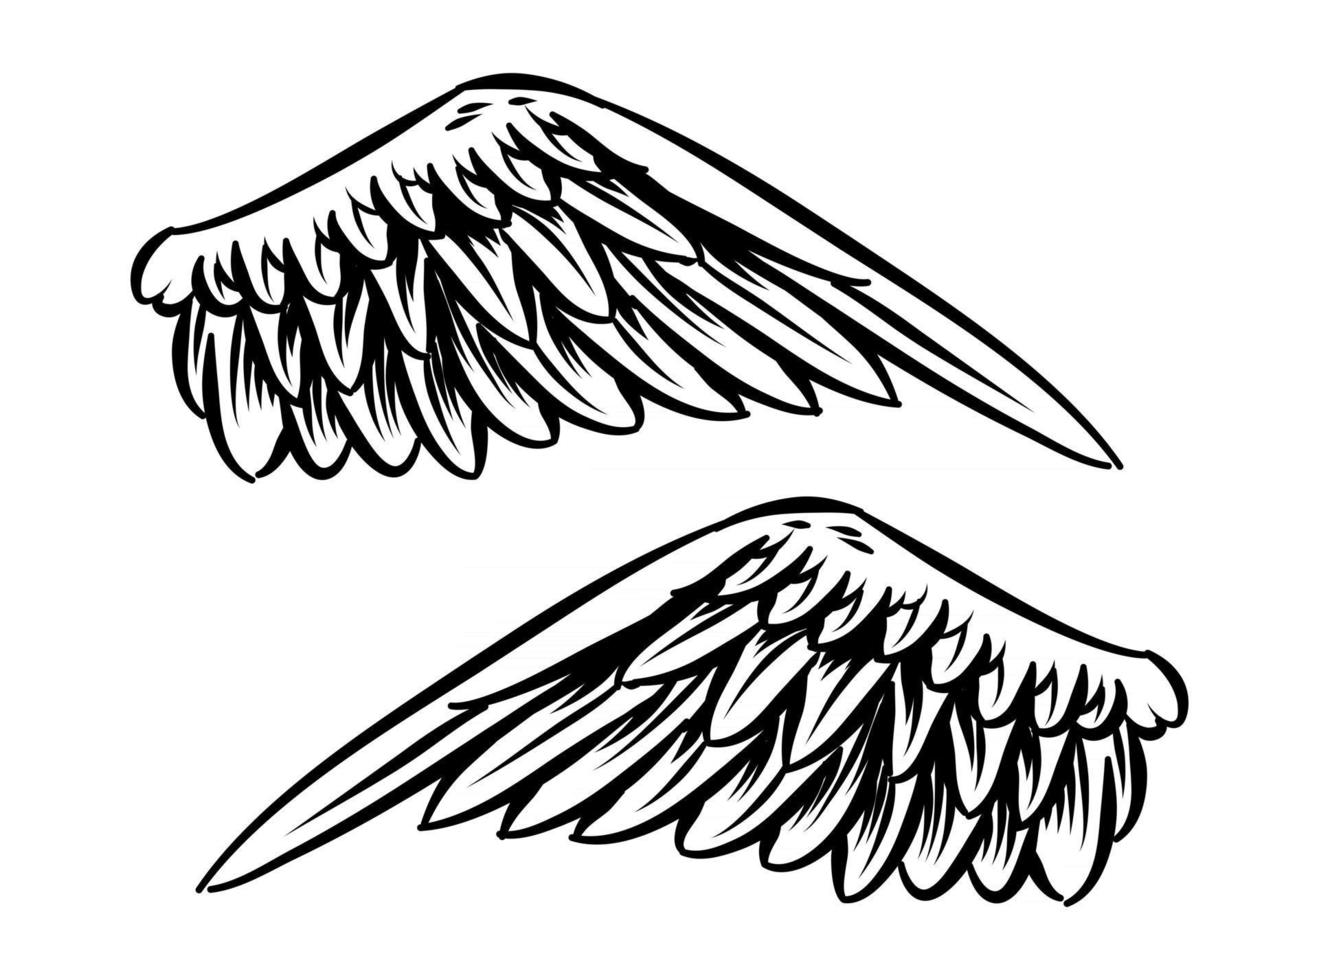 Illustration of Bird Wings for branding element vector